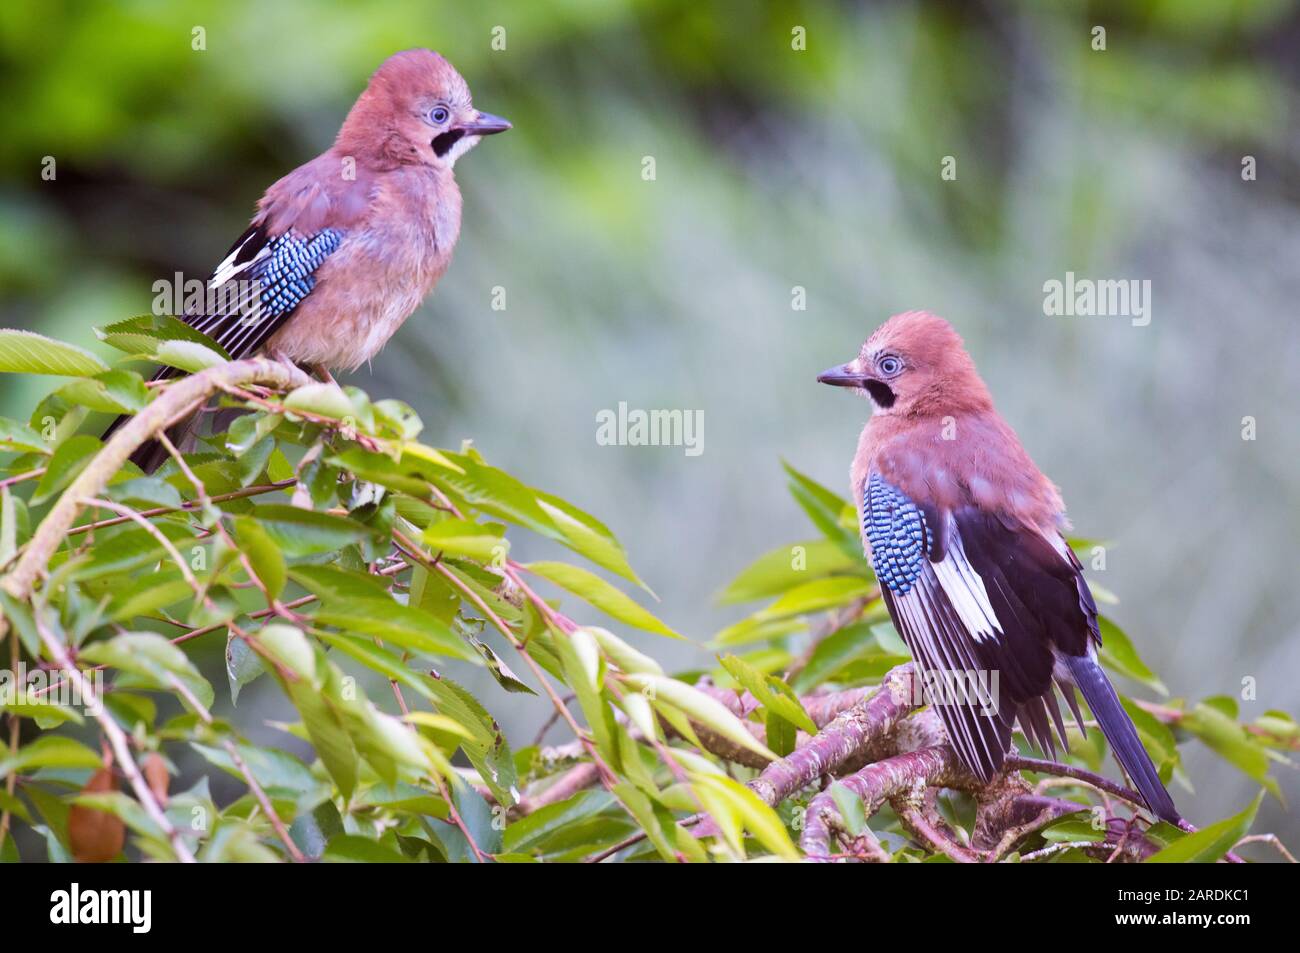 Jay, Garrulus glandarius. Deux jeunes oiseaux sur la branche de l'arbre, leurs ailes sont noires et blanches avec un panneau de plumes distinctes bleu électrique Banque D'Images